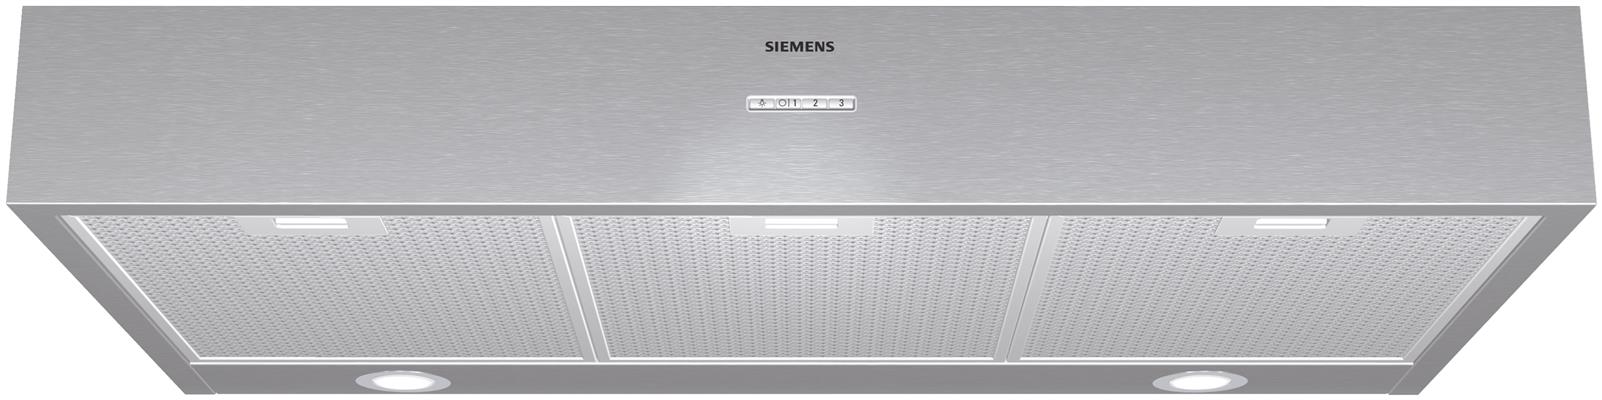 LU29250-Siemens-Onderbouw-afzuigkap